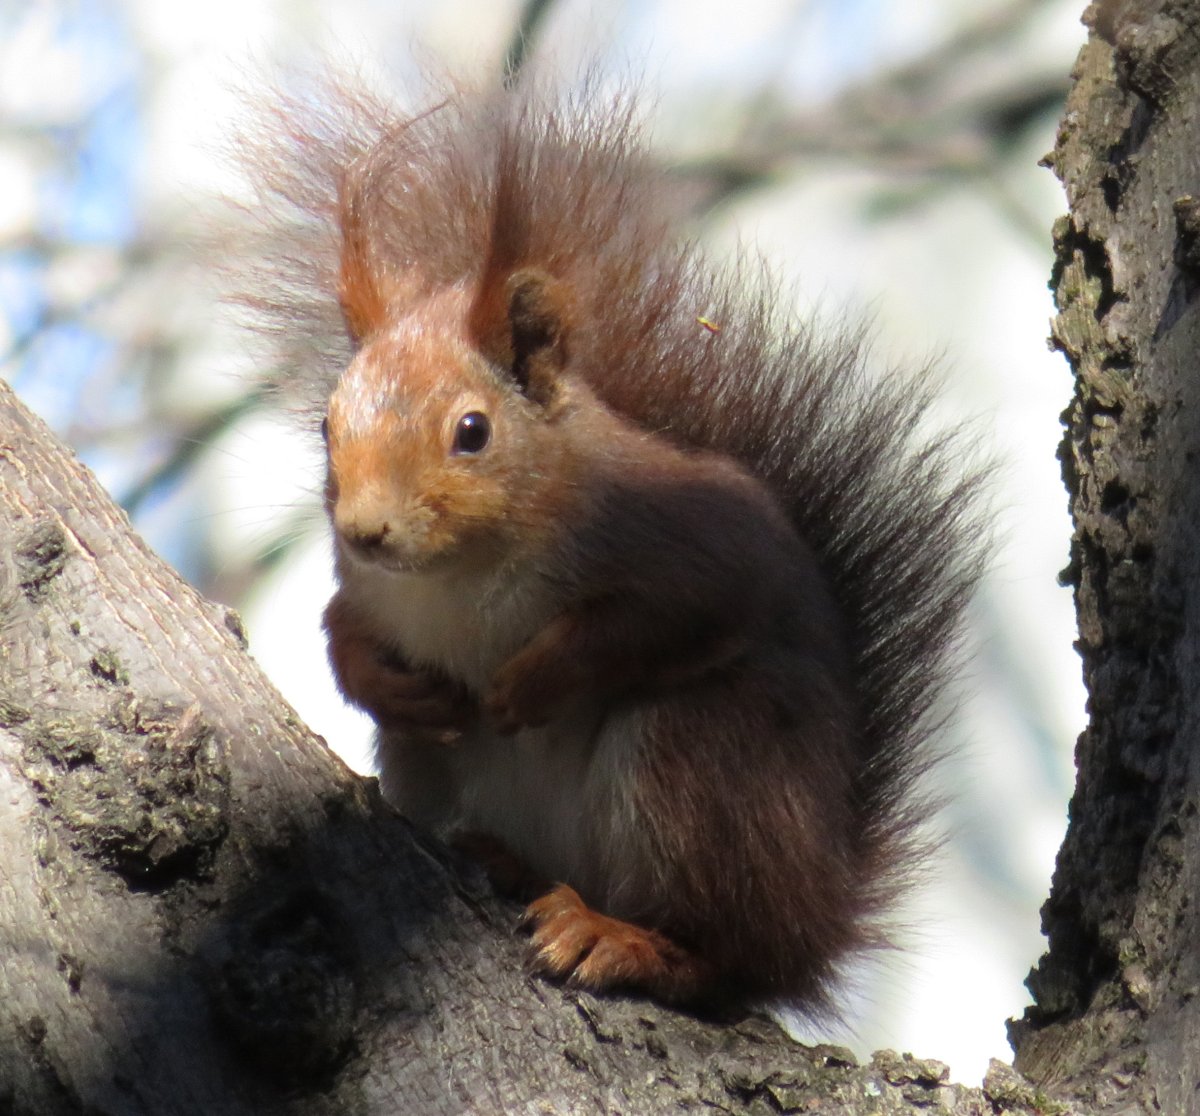 A mókusok (Sciurus vulgaris) gyakran használják a nagyobb harkályodúkat fészekként, vagy táplálék raktározására / Red Squirrels regularly use larger woodpecker cavities as dens and to store food (Tóth Mária).